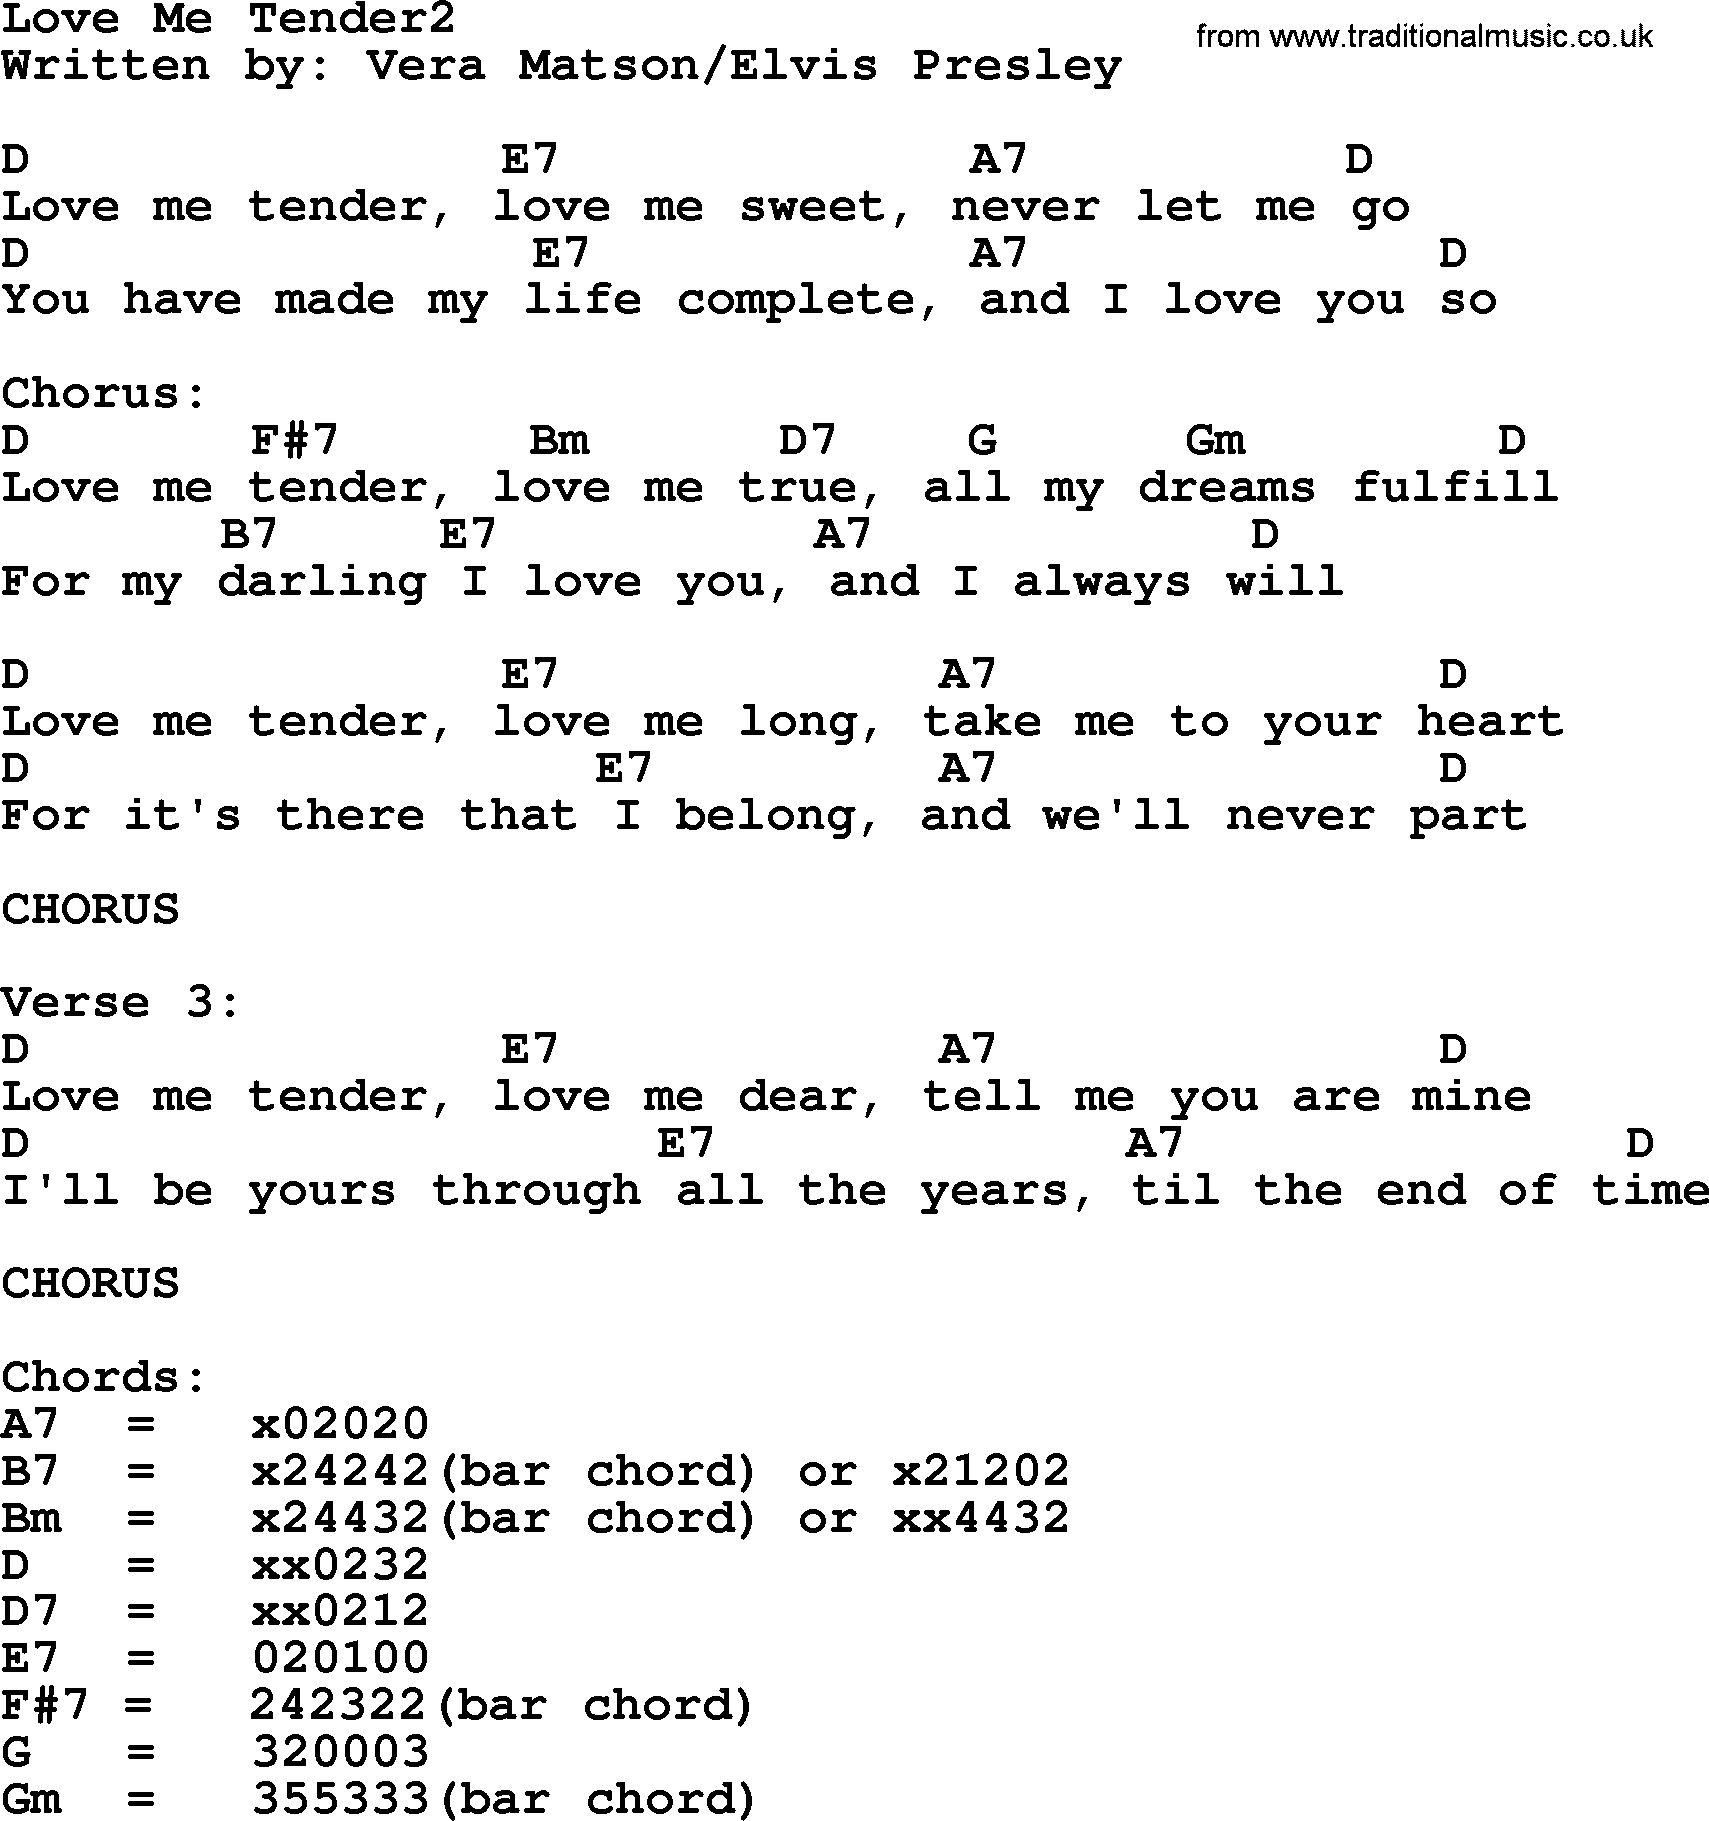 Elvis Presley song: Love Me Tender2, lyrics and chords